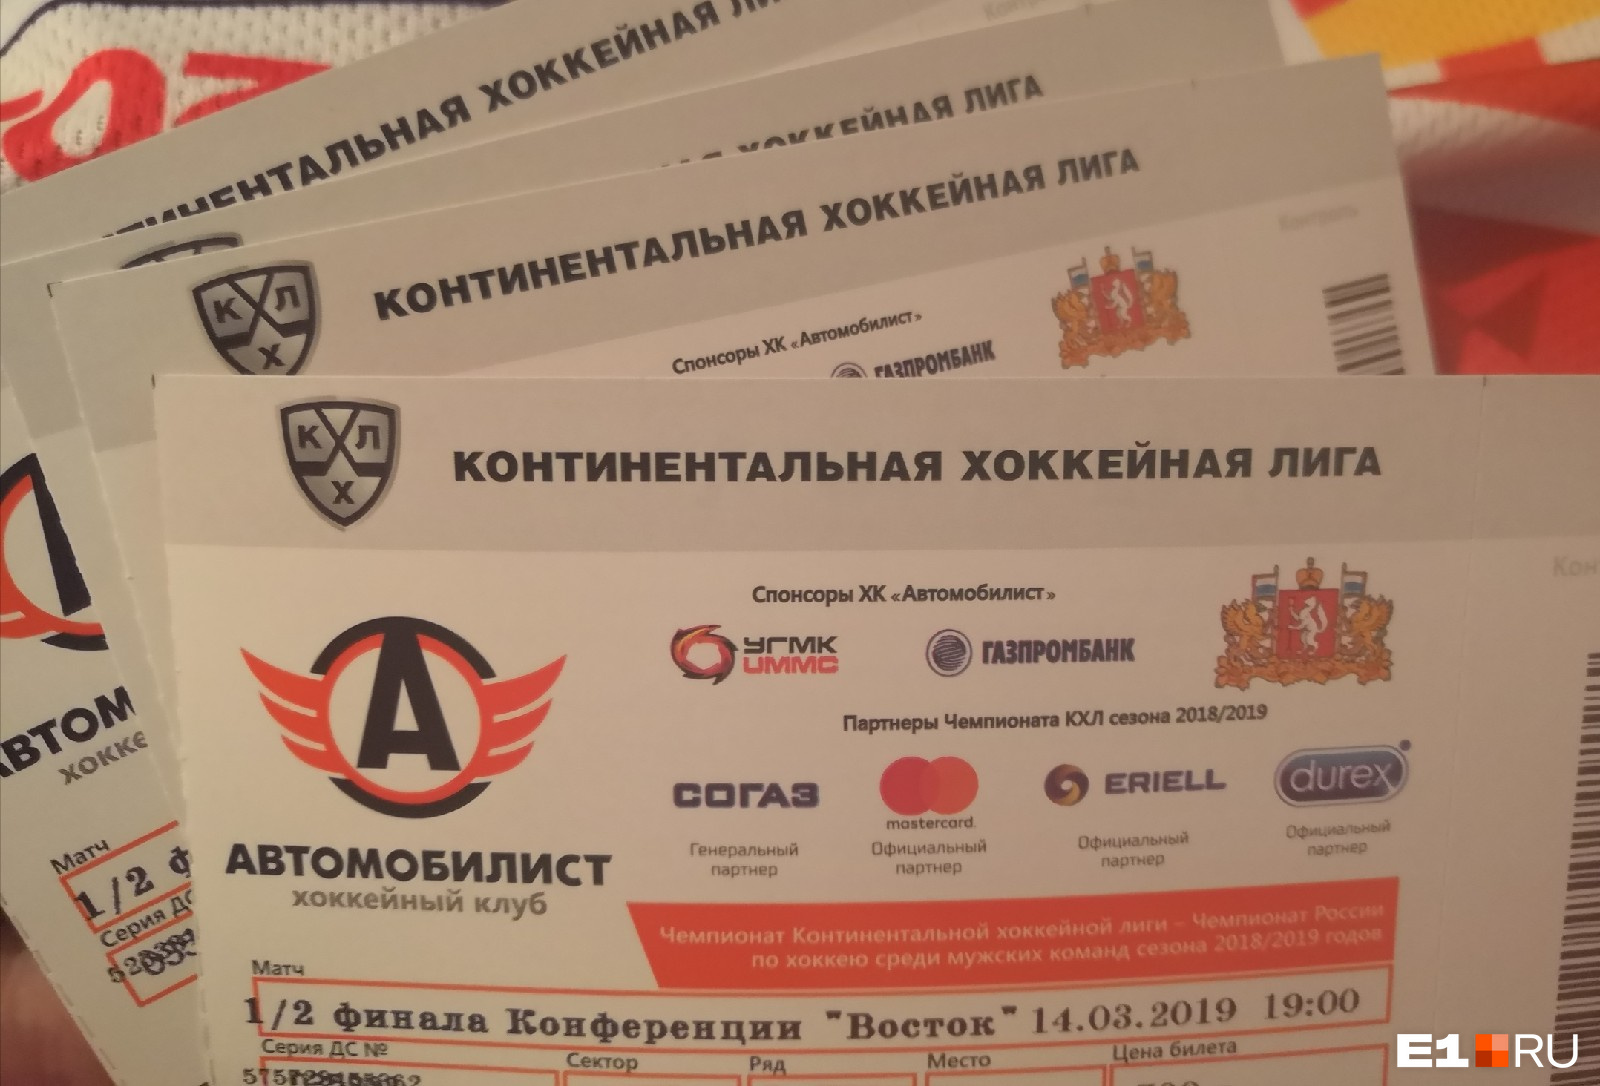 Автомобилист купить билеты на хоккей екатеринбург крк. Билет на матч Автомобилист в Екатеринбурге. Билет на хоккей Автомобилист. Билеты хк Автомобилист. Сколько стоят билеты на матч Автомобилист.